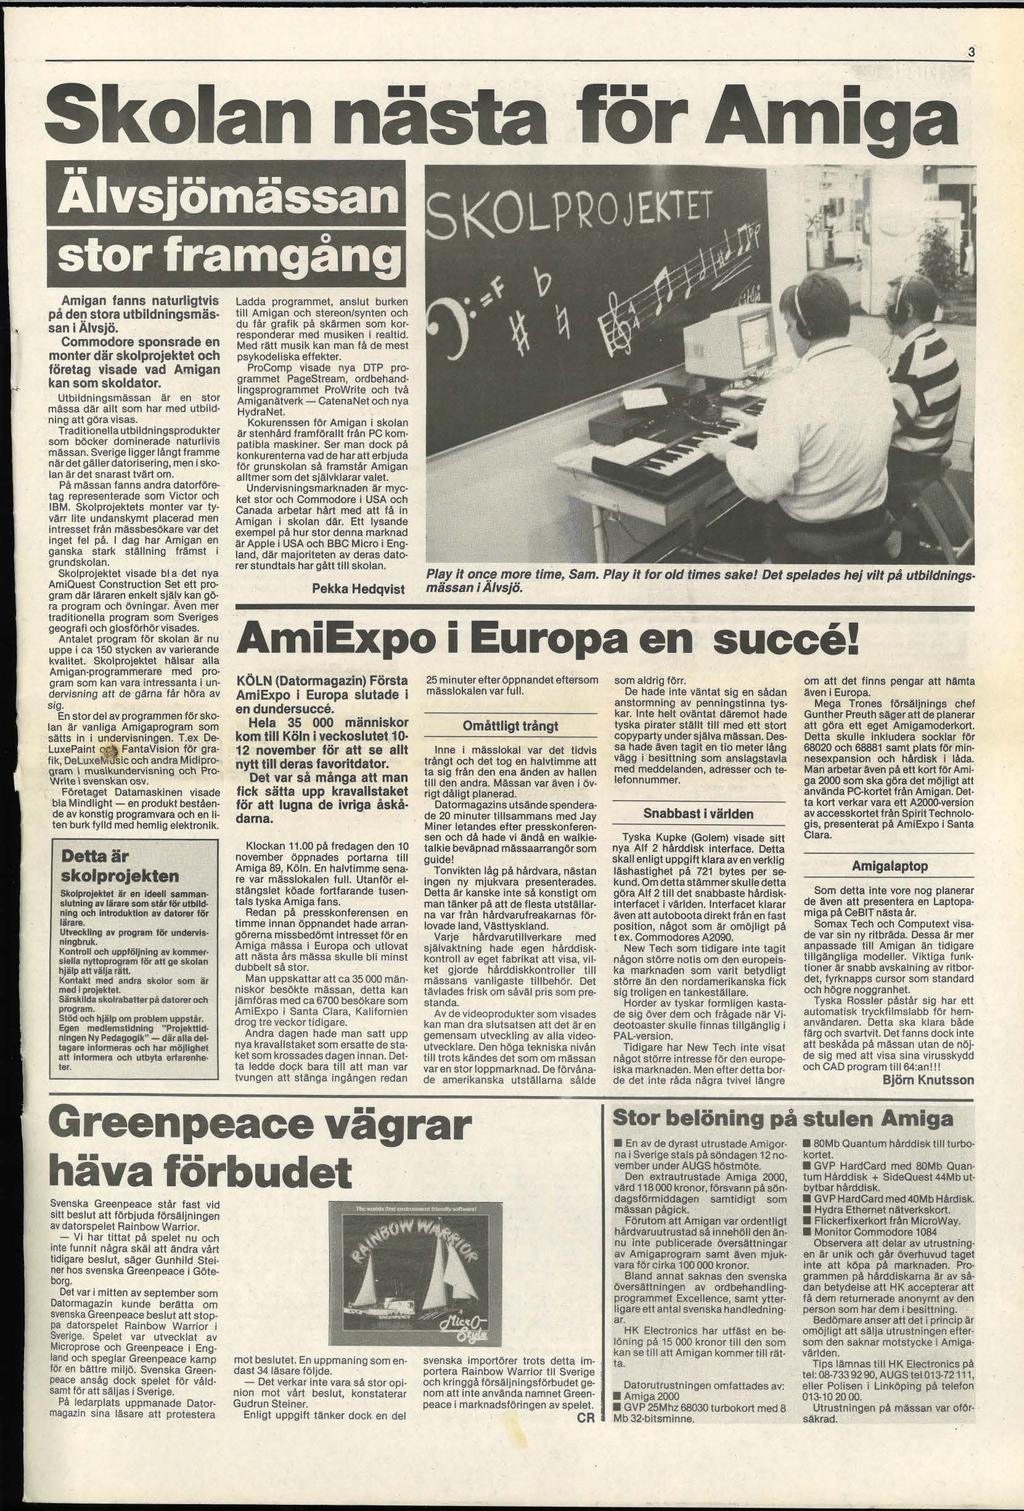 3 Skolan nästa för Amiga Alvsjömässan., stor framgång Amigan fanns naturligtvis på den stora utbildningsmässan i Älvsjö.